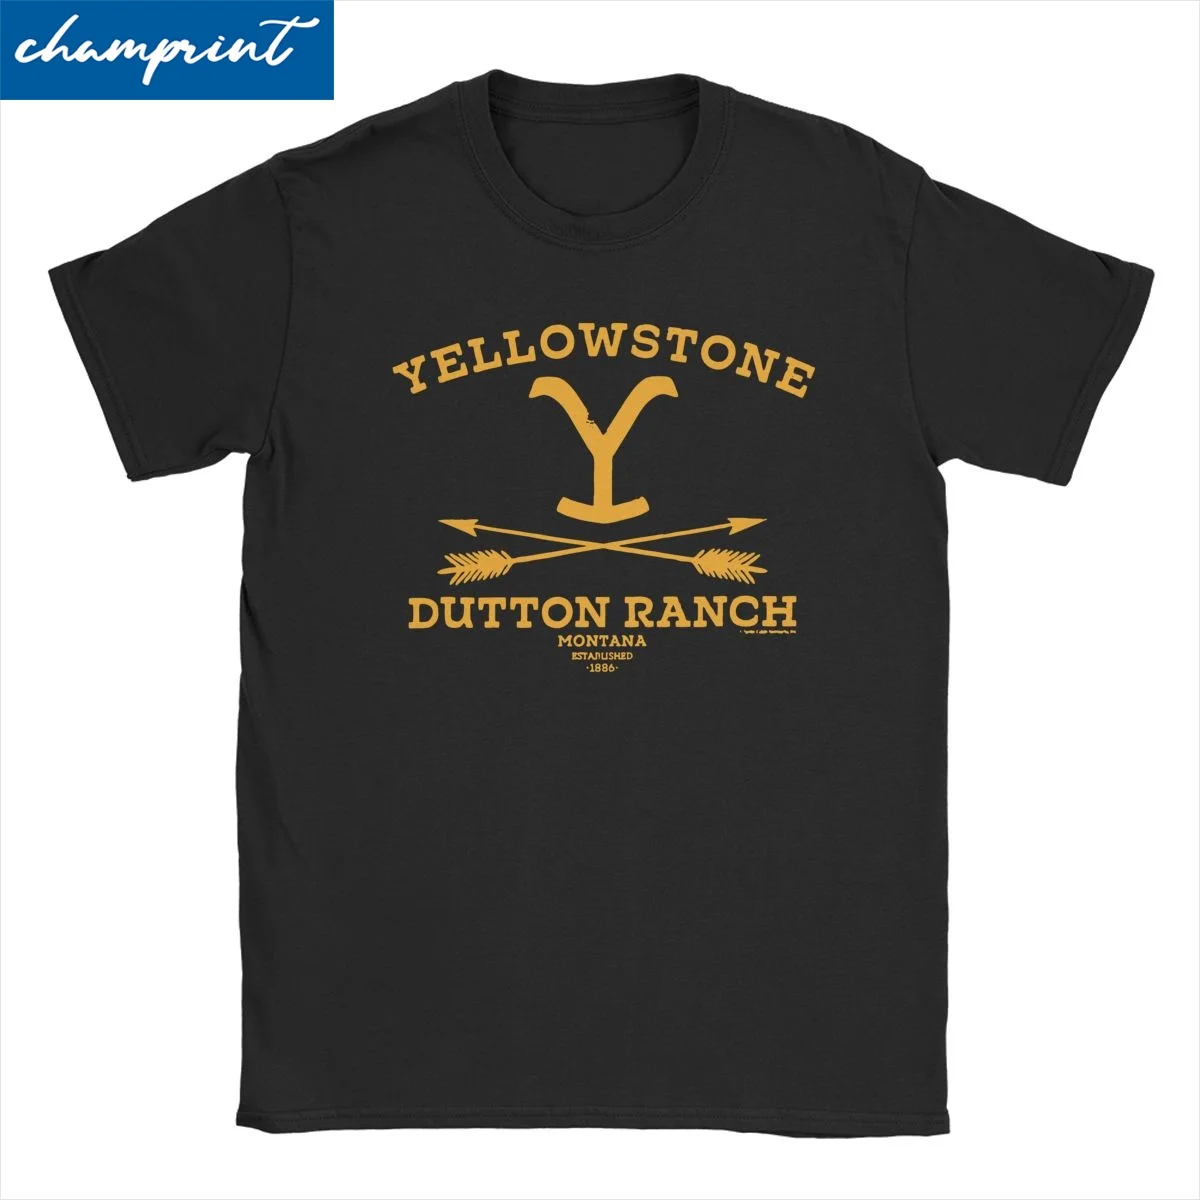 

Leisure Yellowsstone Dutton T-Shirts Men Women's Crewneck Cotton T Shirts Ranch Montana Short Sleeve Tee Shirt Gift Idea Tops